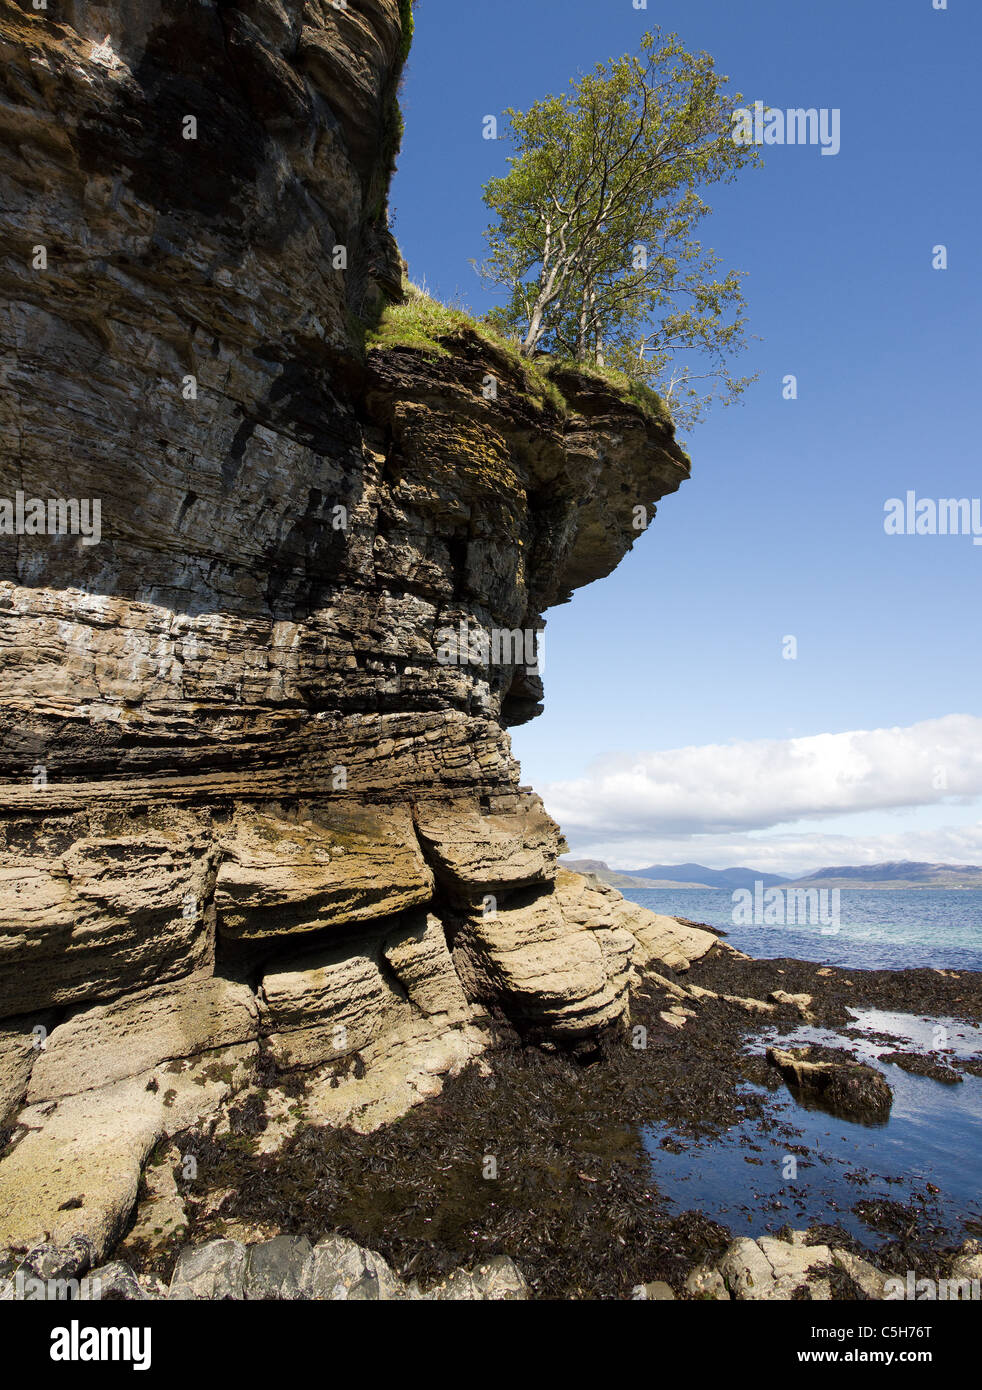 Les bouleaux en surplomb rocheux érodé sur les falaises de la mer sur les rives du Loch Slapin près d'Elgol, Isle of Skye, Scotland, UK Banque D'Images